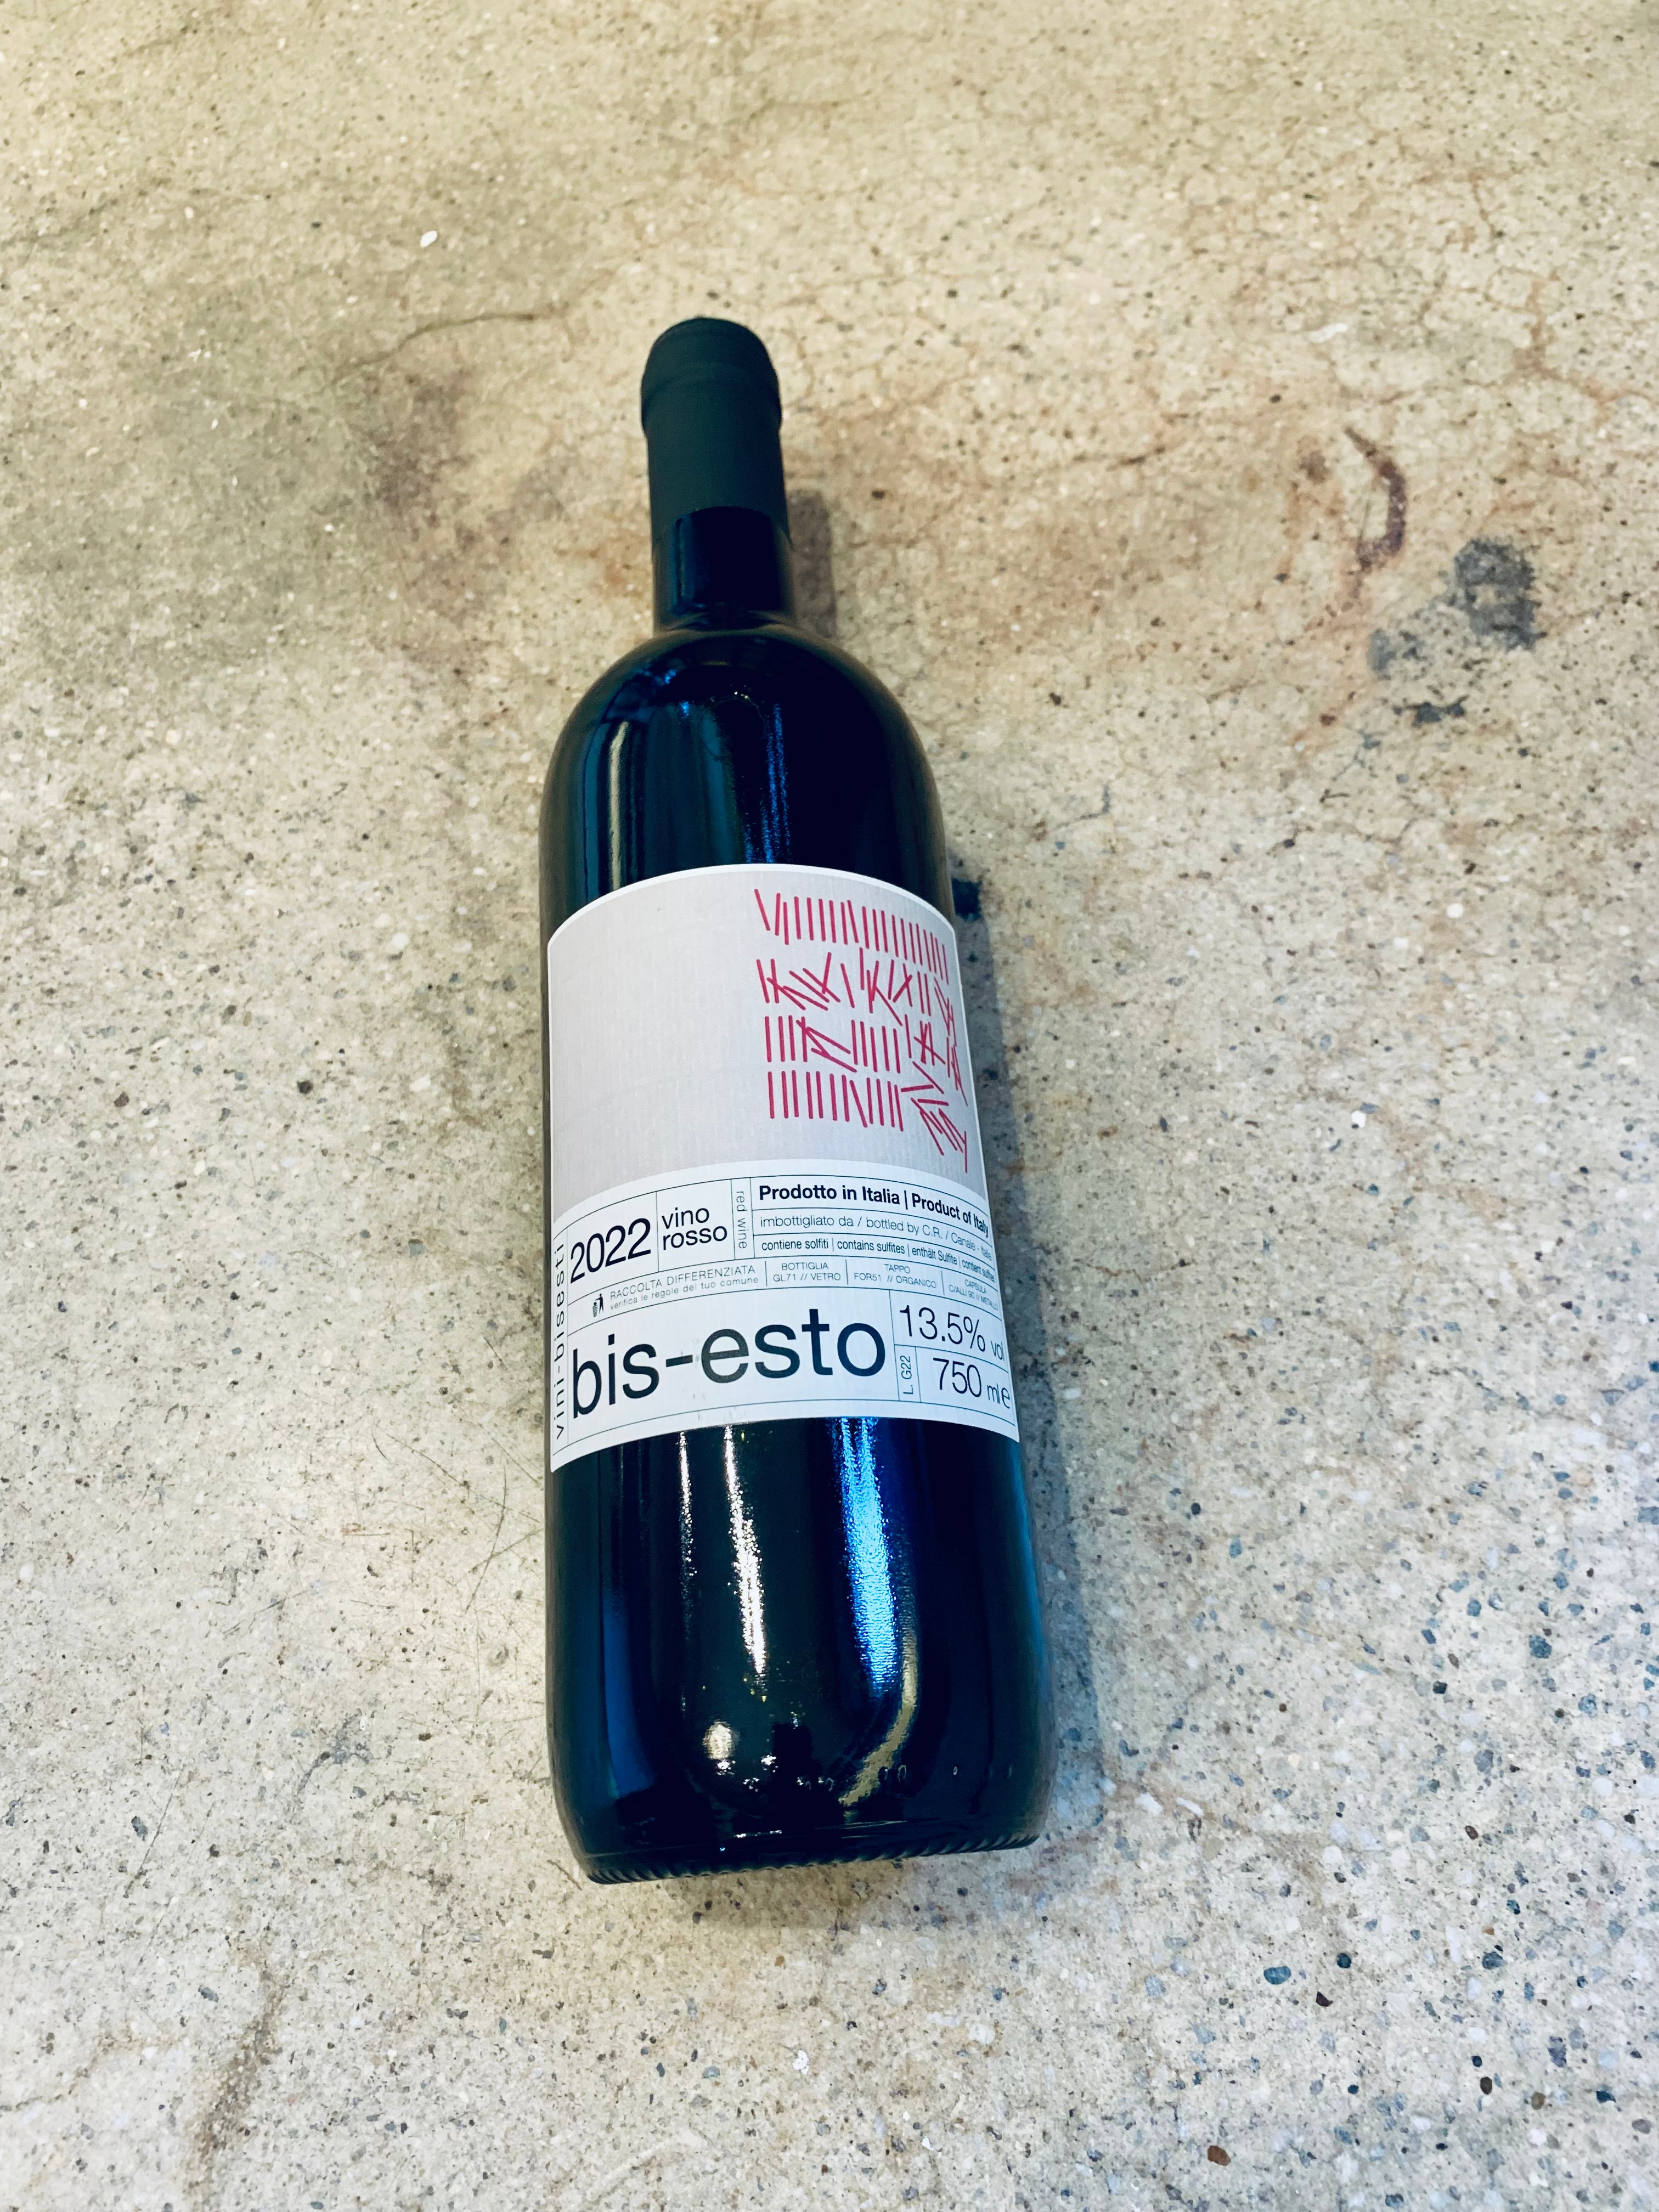 Vini-Bisesti - "Bis-Esto" vino rosso  2022 750ml (13.5% ABV)